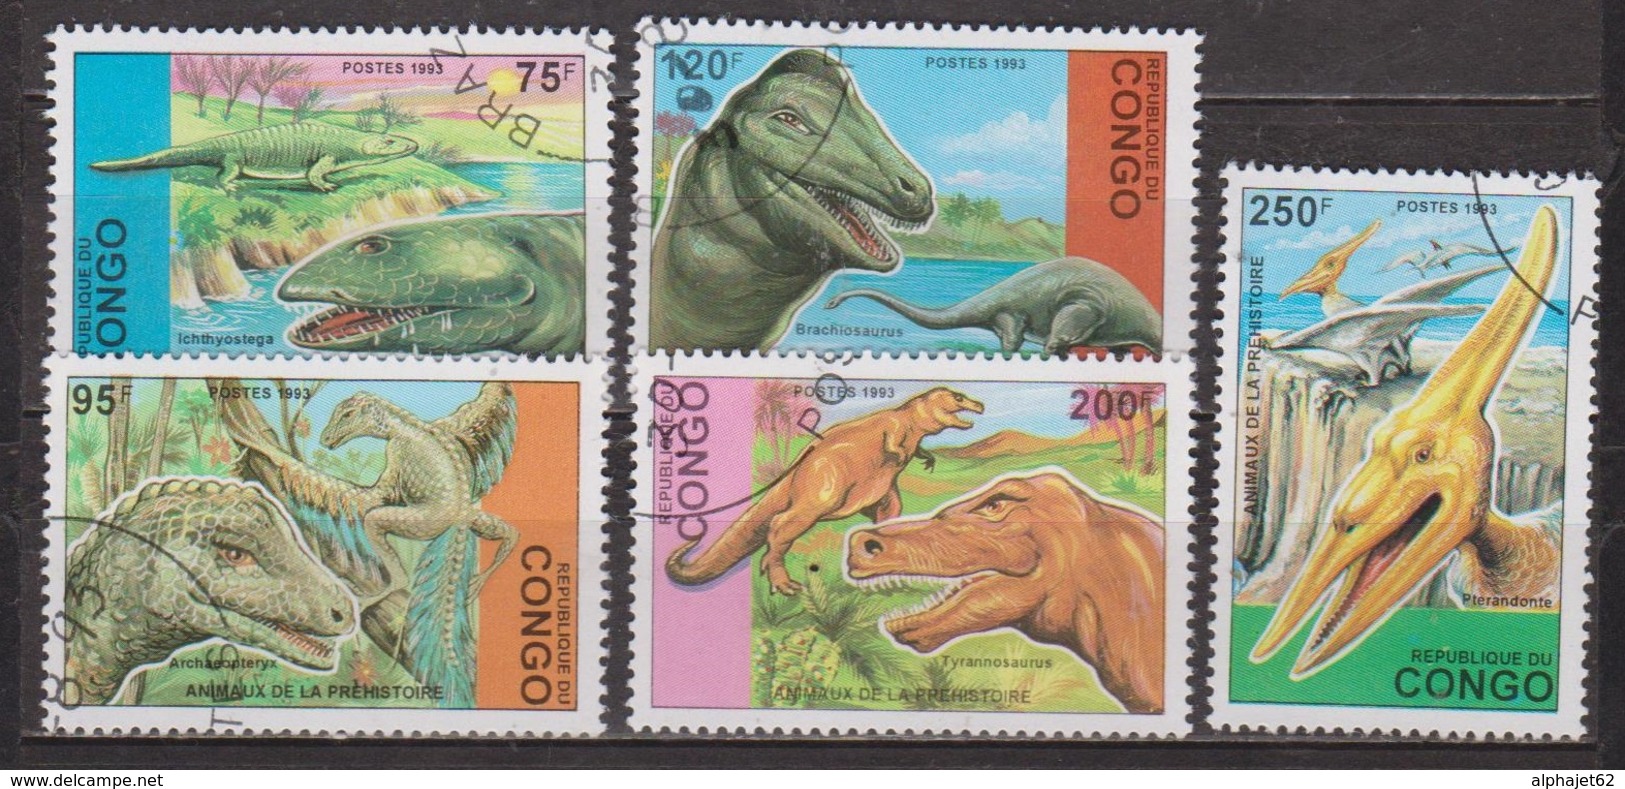 Animaux Préhistoriques - Dinosaures - CONGO - Brachiosaure, Tyrannosaure, Pteranodon - N° 1398 à 1402 - 1993 - Oblitérés